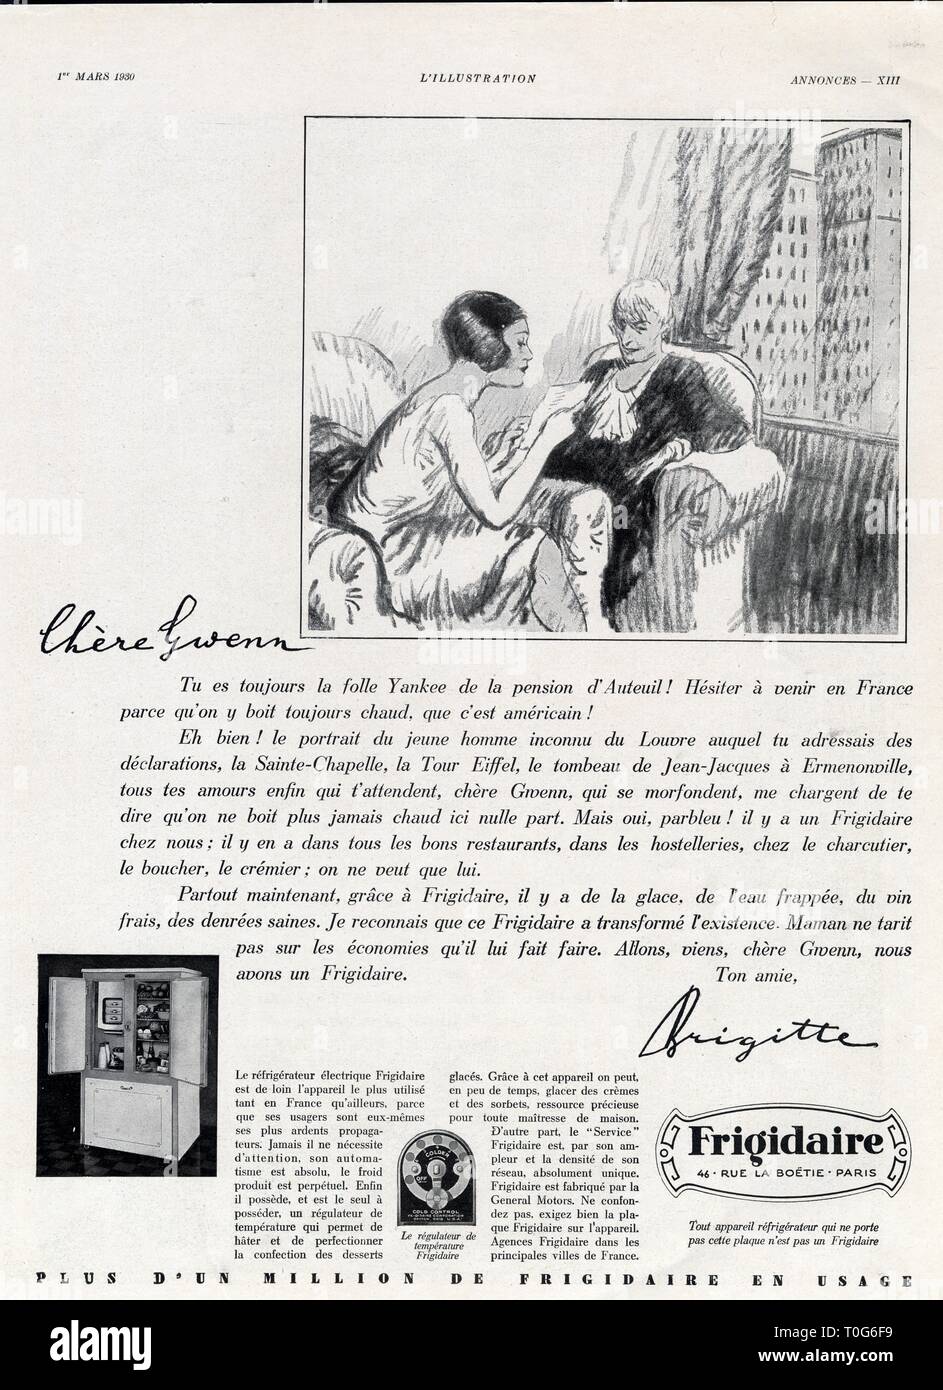 Publicité ancienne. Frigidaire. 1 mars 1930 Stock Photo